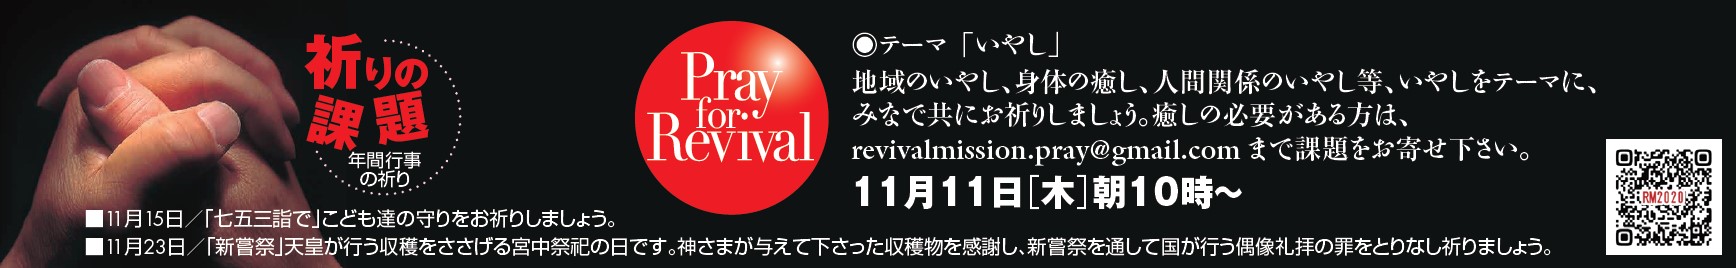 YouTube - Pray for Revival (2021年11月) @ リバイバルミッション (Youtube配信)